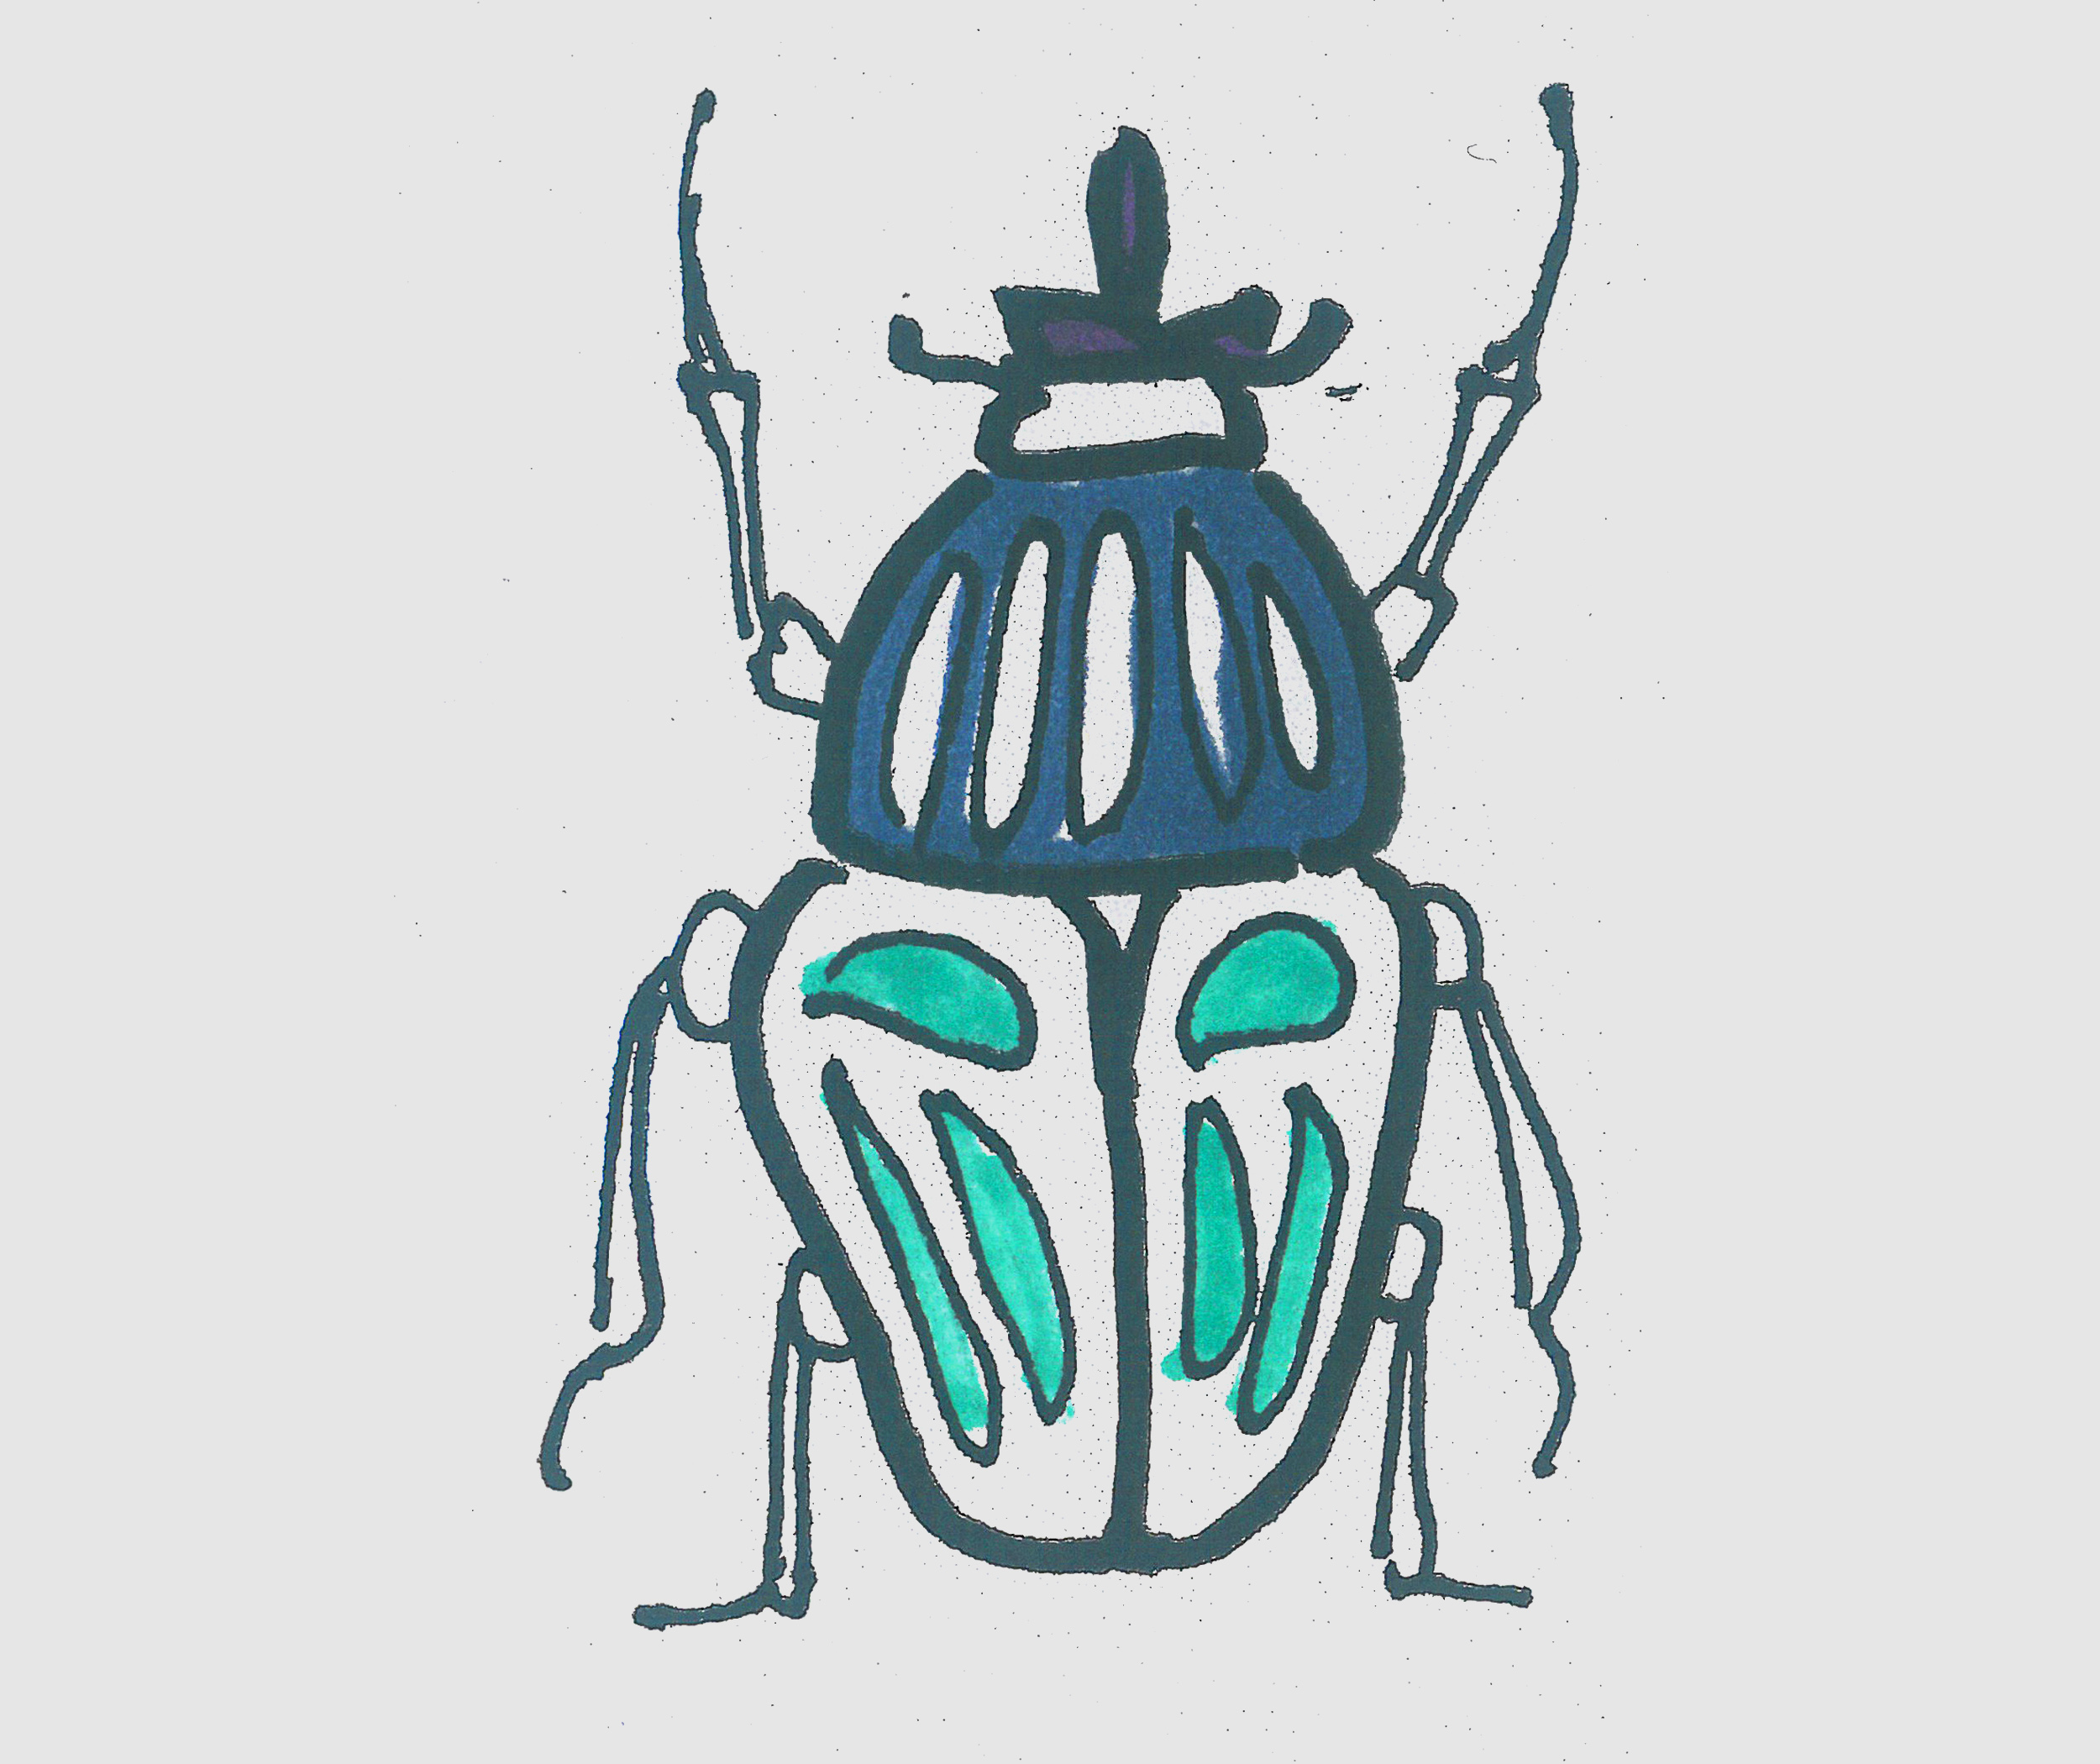 简笔画甲壳虫怎么画简单又好看 小甲壳虫画法